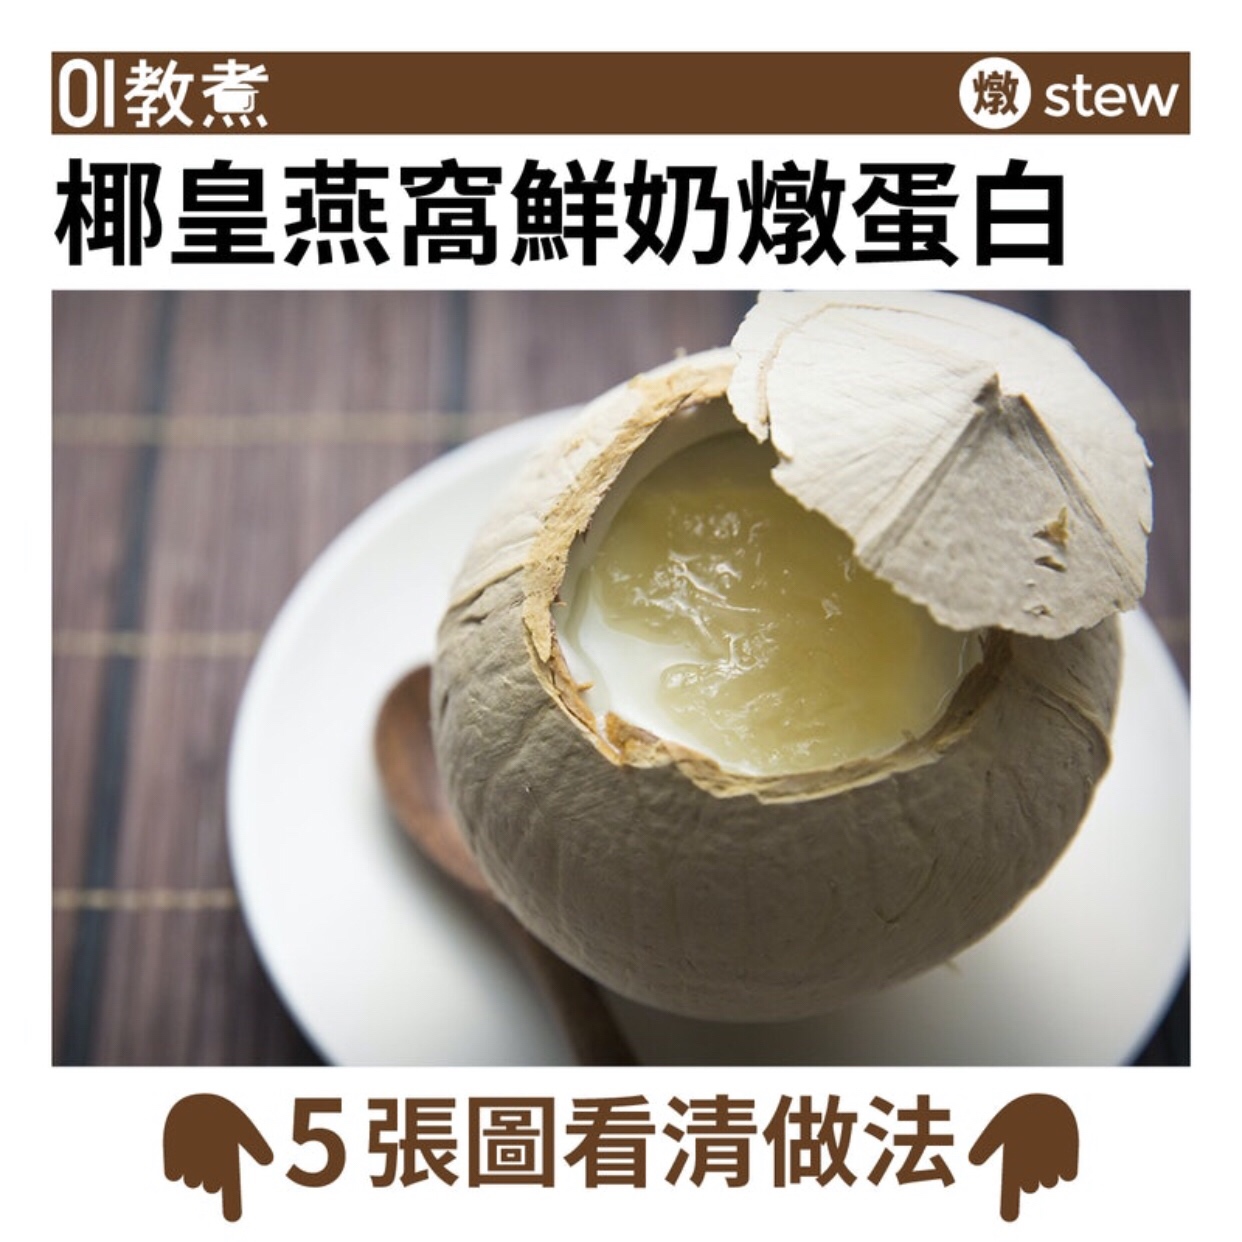 椰皇燕窝鲜奶炖蛋白的做法步骤图 马克一些简单菜谱 下厨房